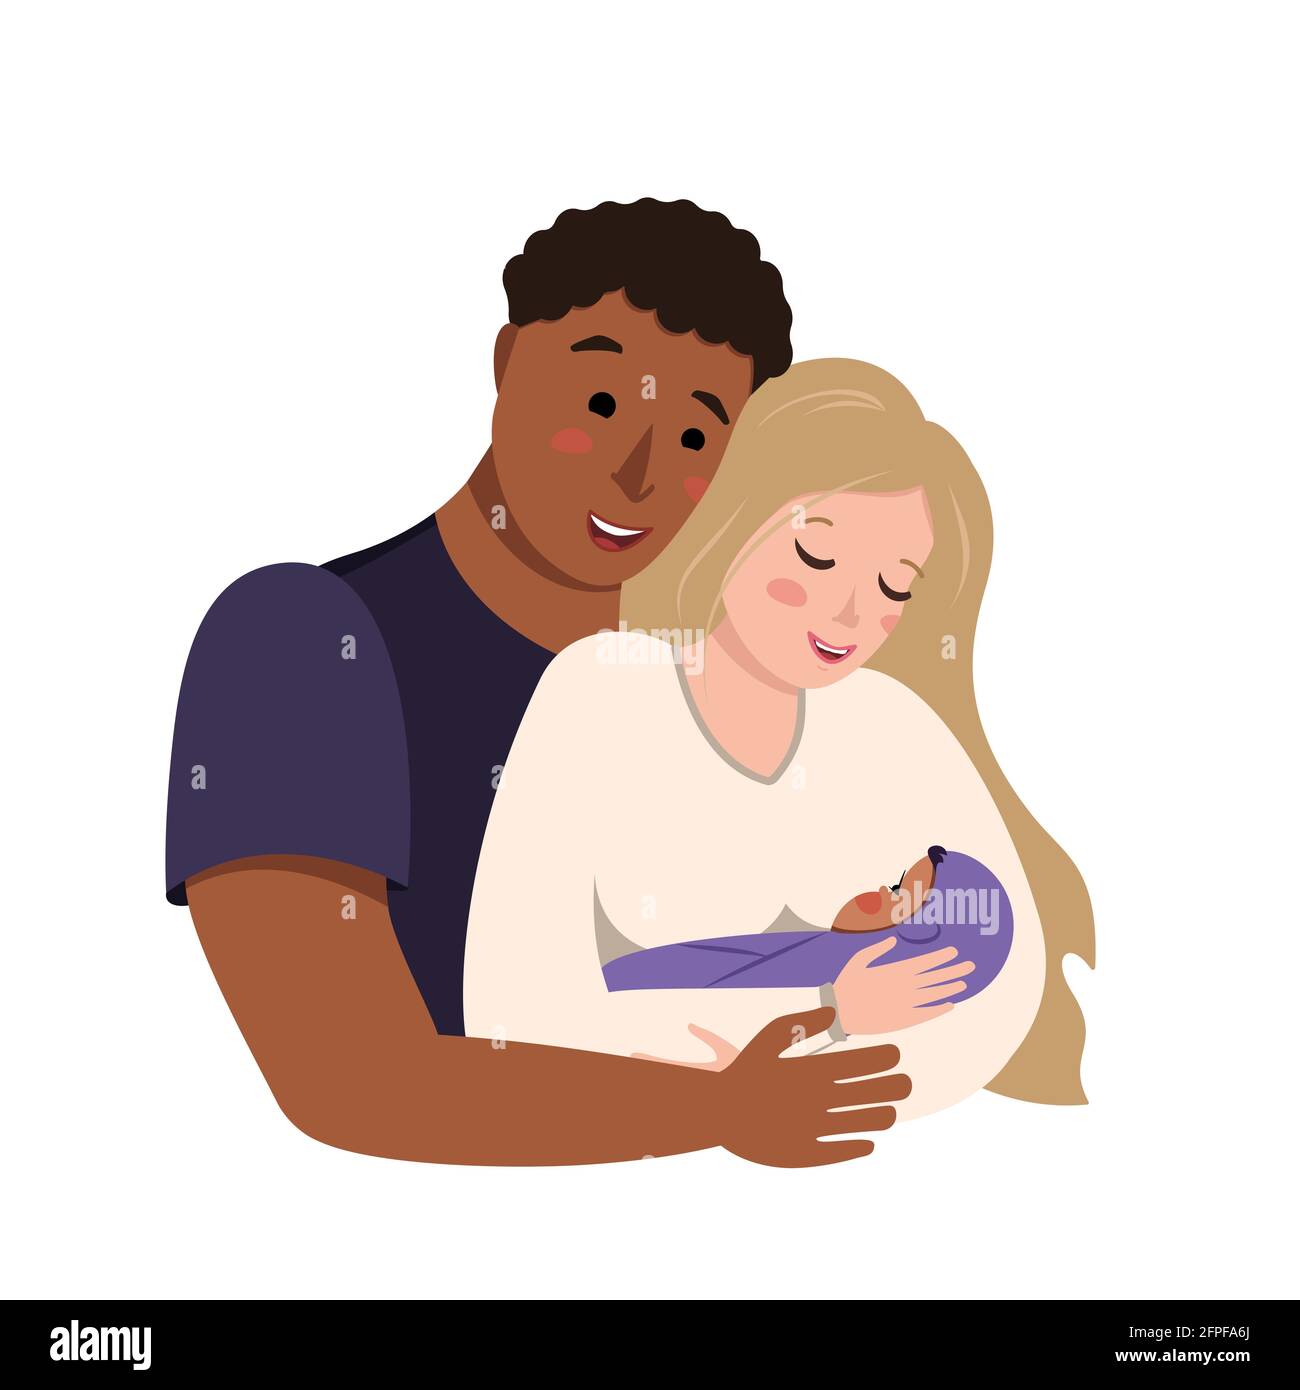 Famiglia internazionale interrazziale. Il marito abbraccia sua moglie con il bambino fra le braccia. La mamma multietnica e il papà sono felici e sorridenti. La famiglia Illustrazione Vettoriale